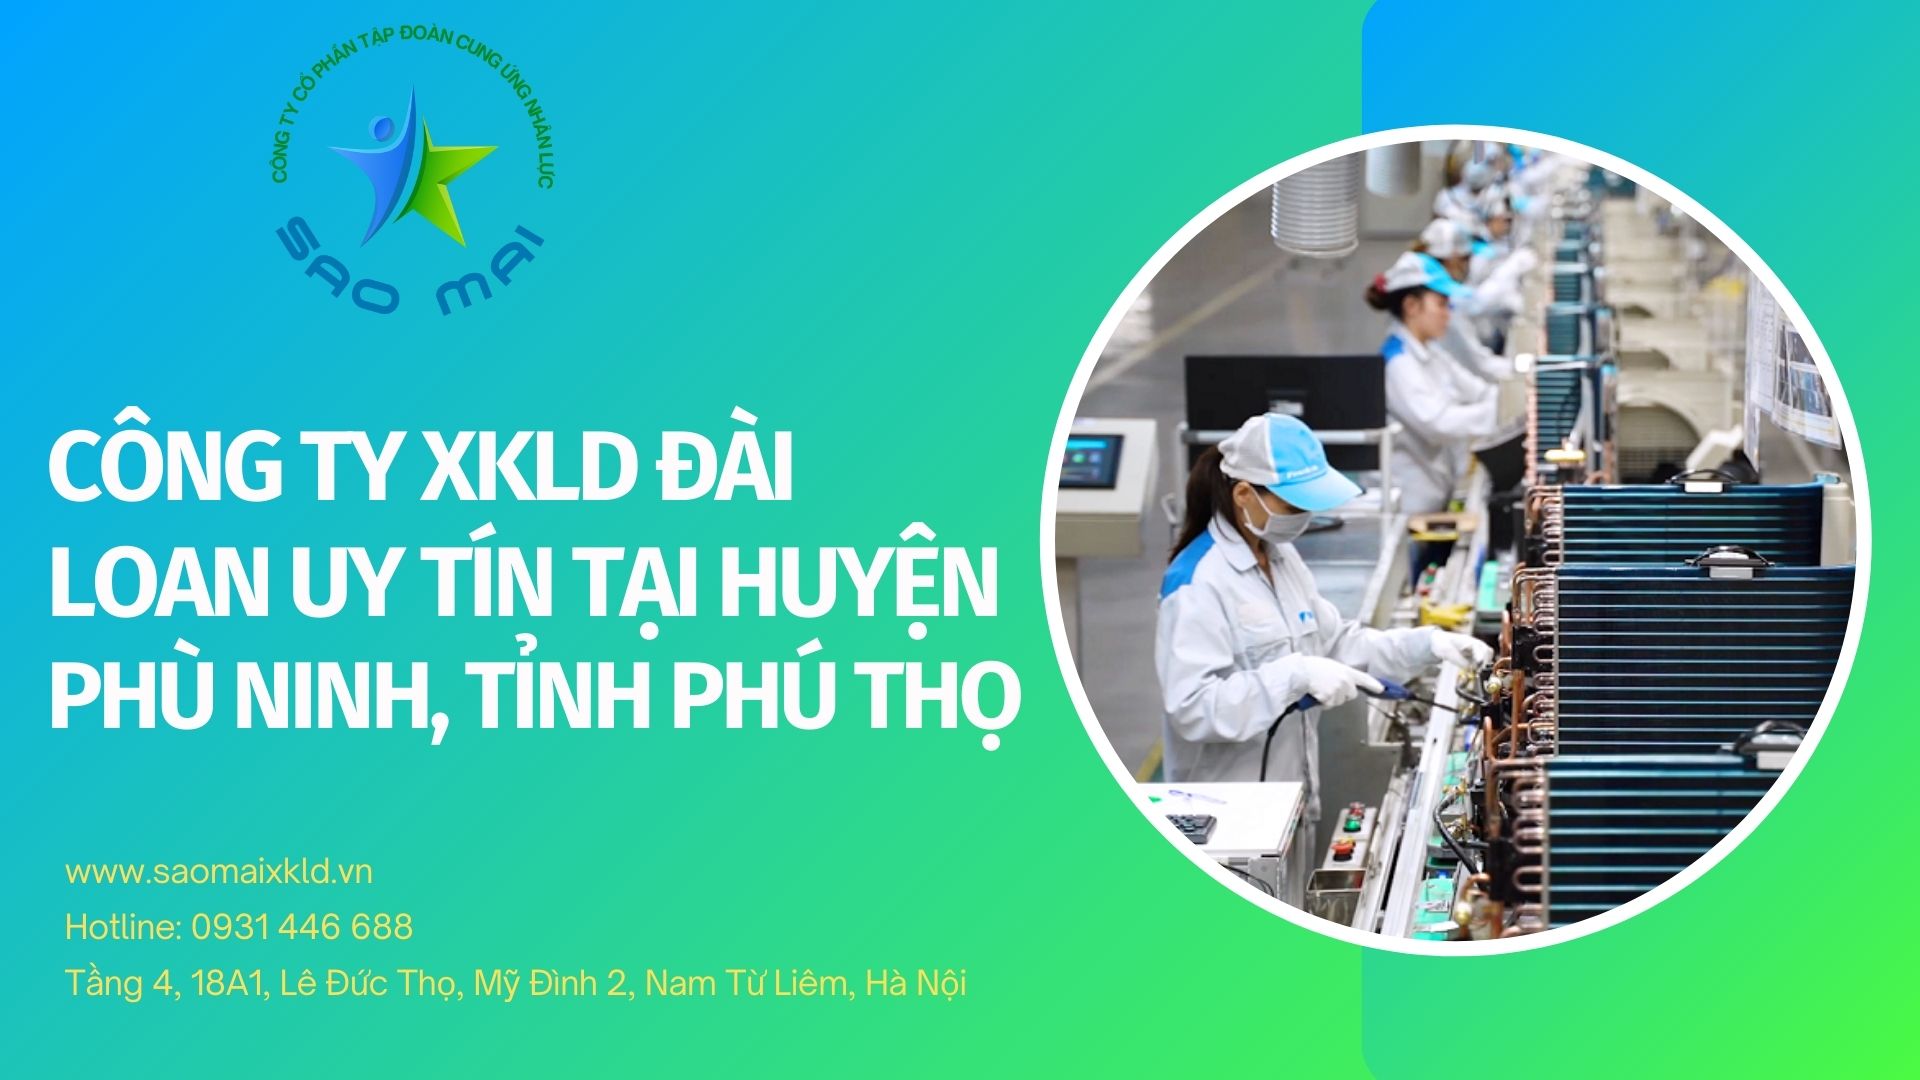 Công ty xuất khẩu lao động Đài Loan uy tín, chi phí thấp tại huyện PHÙ NINH, tỉnh PHÚ THỌ